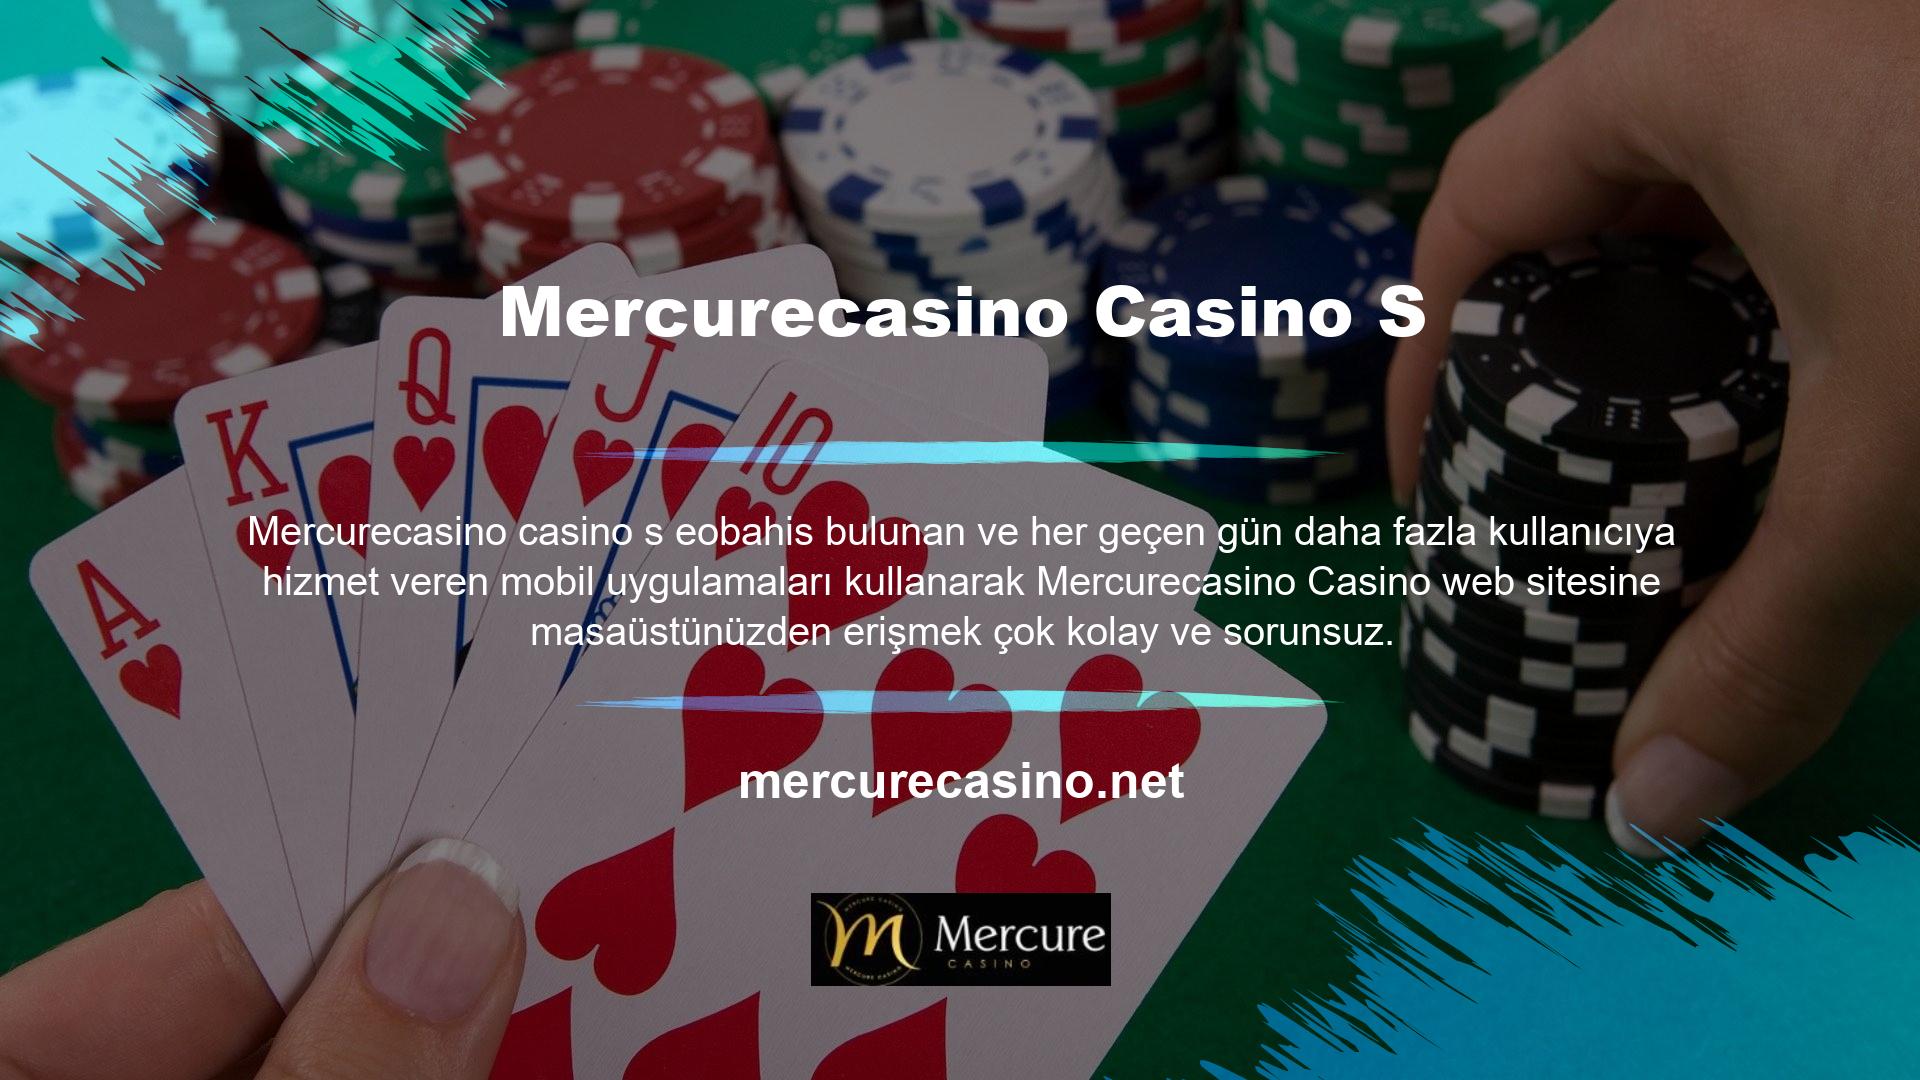 Siz de bu harika dünyaya ilk adımınızı atmak için Mercurecasino Casino kayıt linkini kullanabilirsiniz